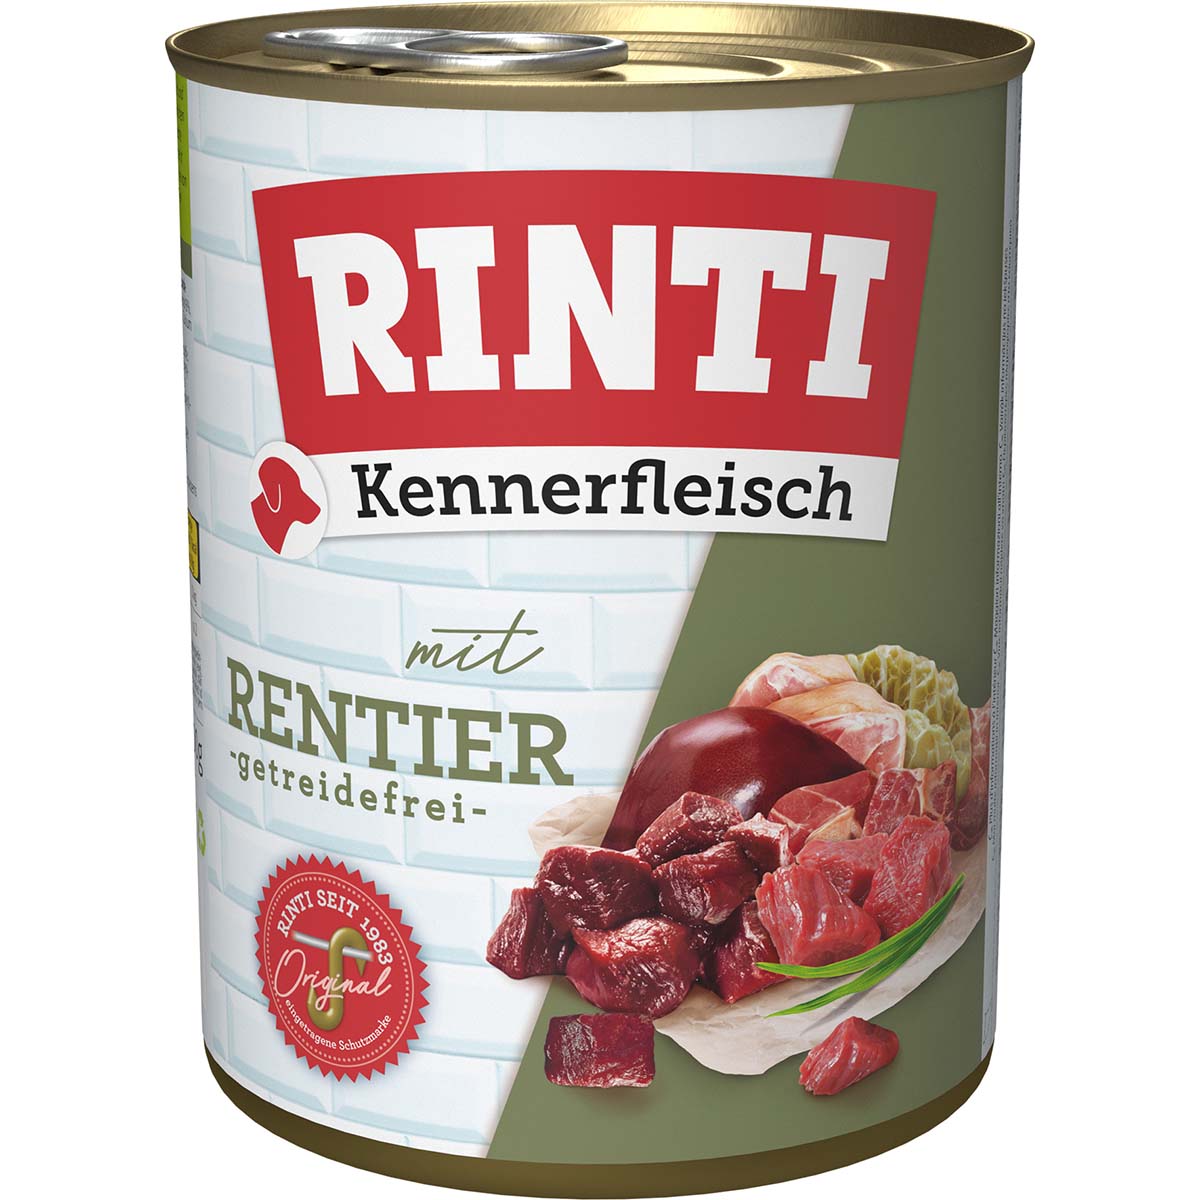 Rinti Kennerfleisch mit Rentier gf 24x800g von Rinti